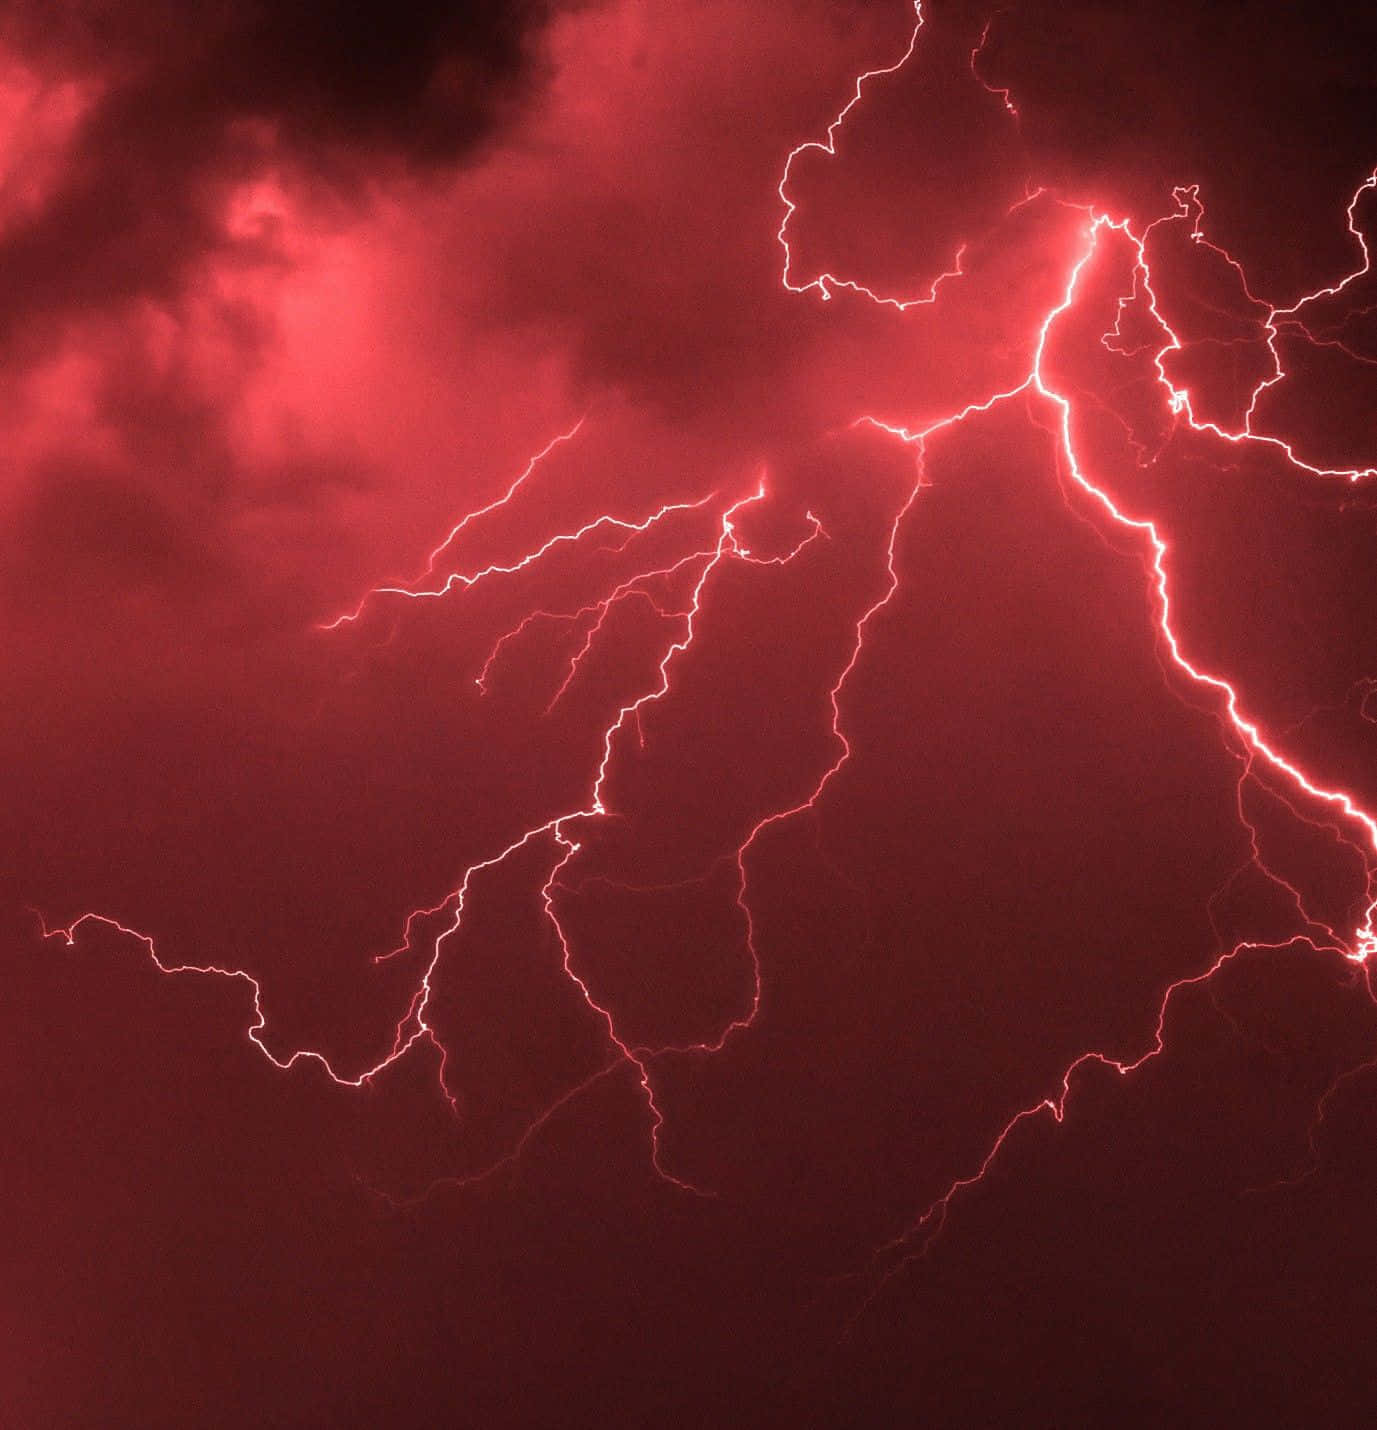 Red Lightning Strikes Night Sky Wallpaper